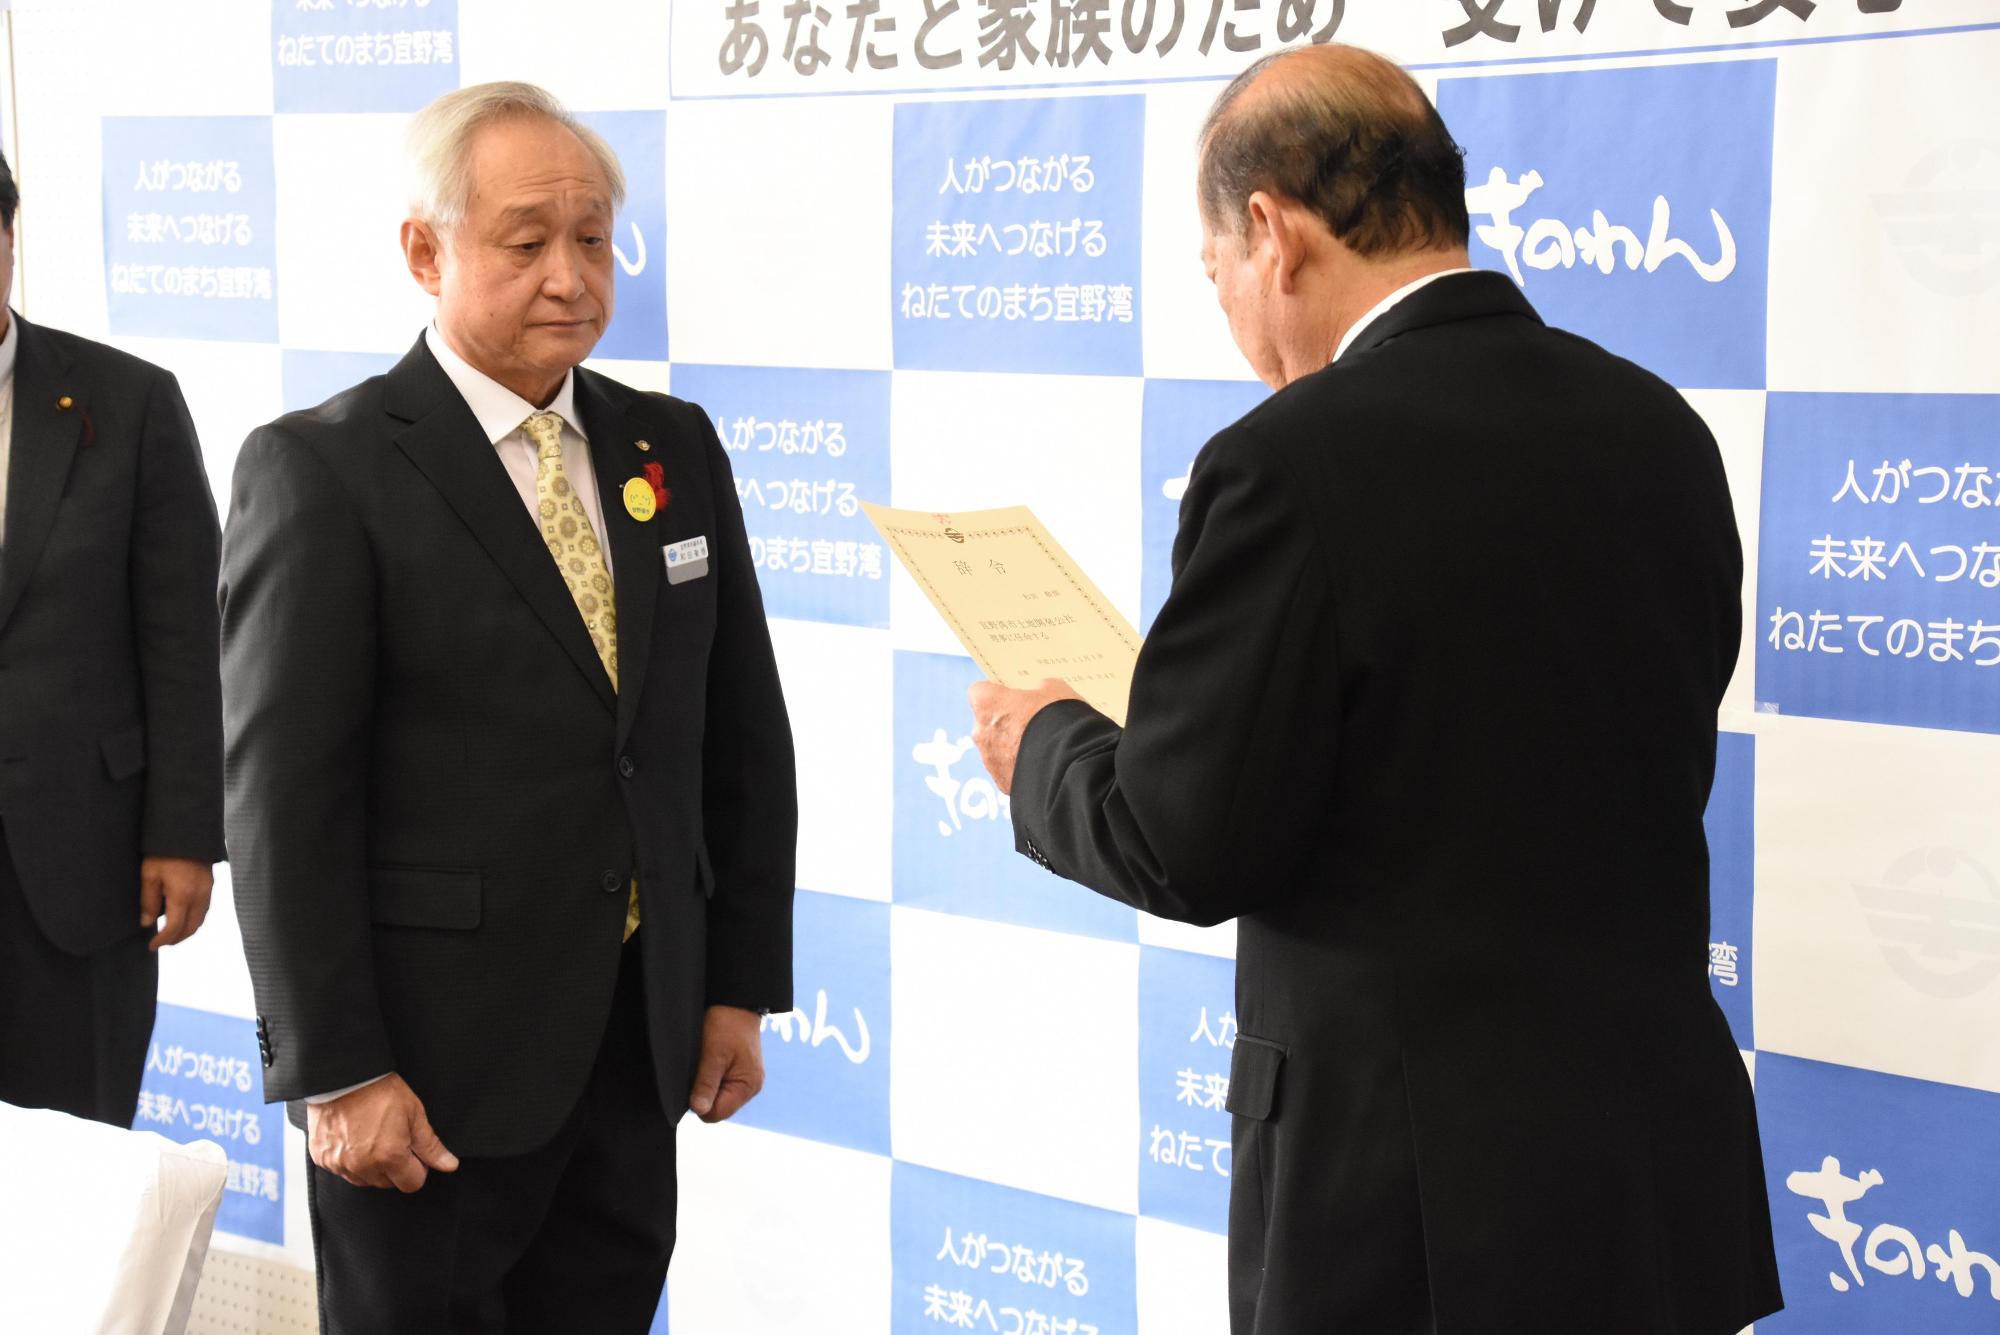 松川正則市長が辞令を読んでいて、和田敬悟副市長が受け取る前の写真